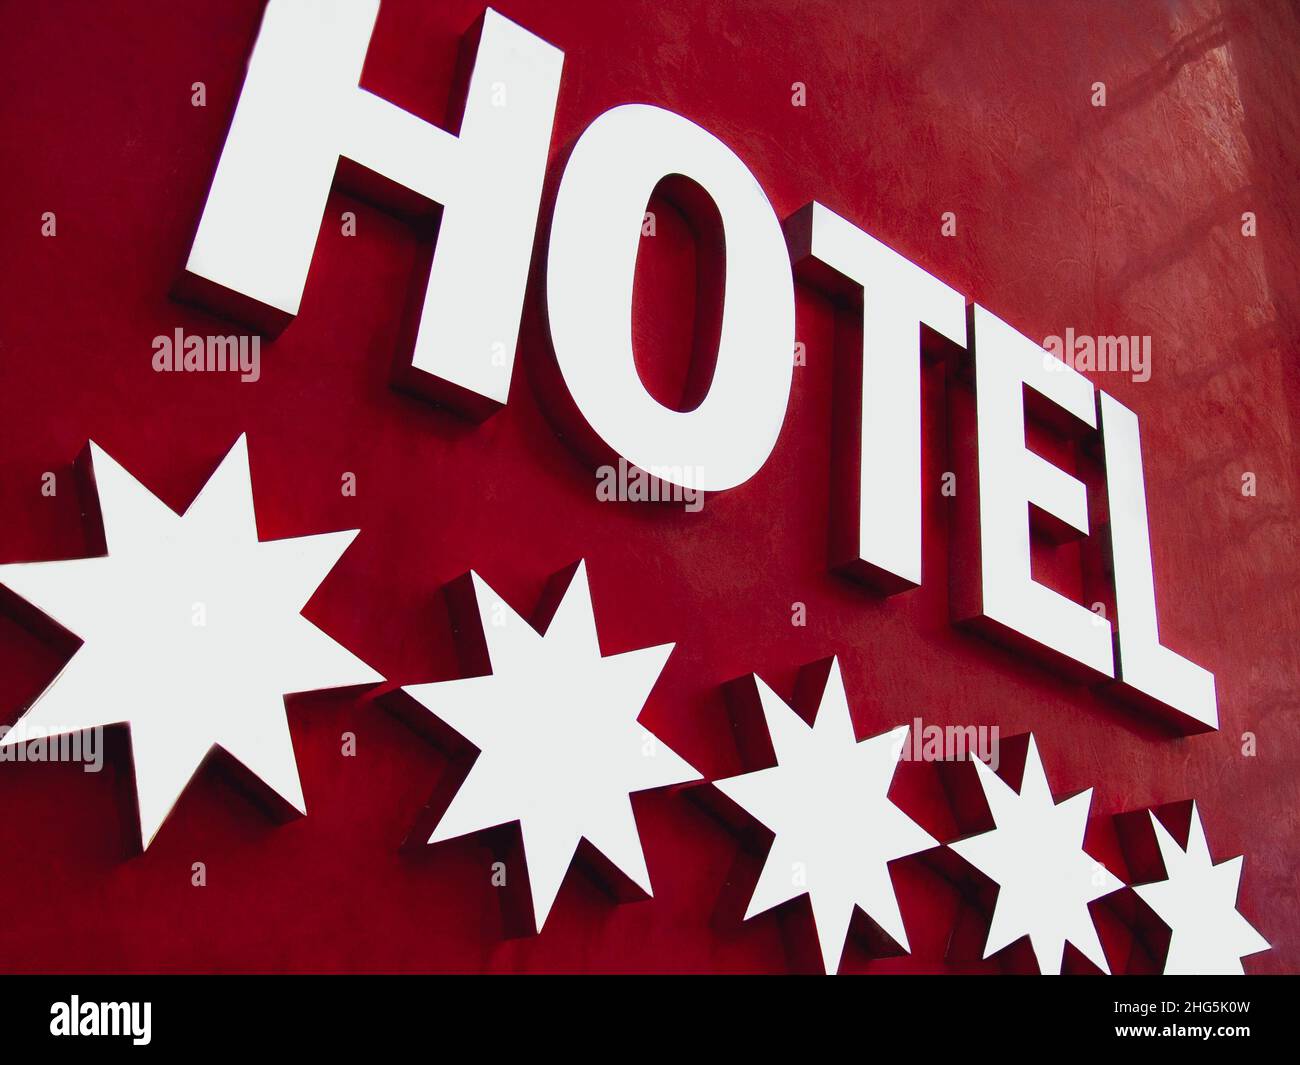 HOTEL a 5 STELLE ILLUMINATO SEGNO metallo riflettente cinque stelle segno hotel su sfondo rosso parete Foto Stock